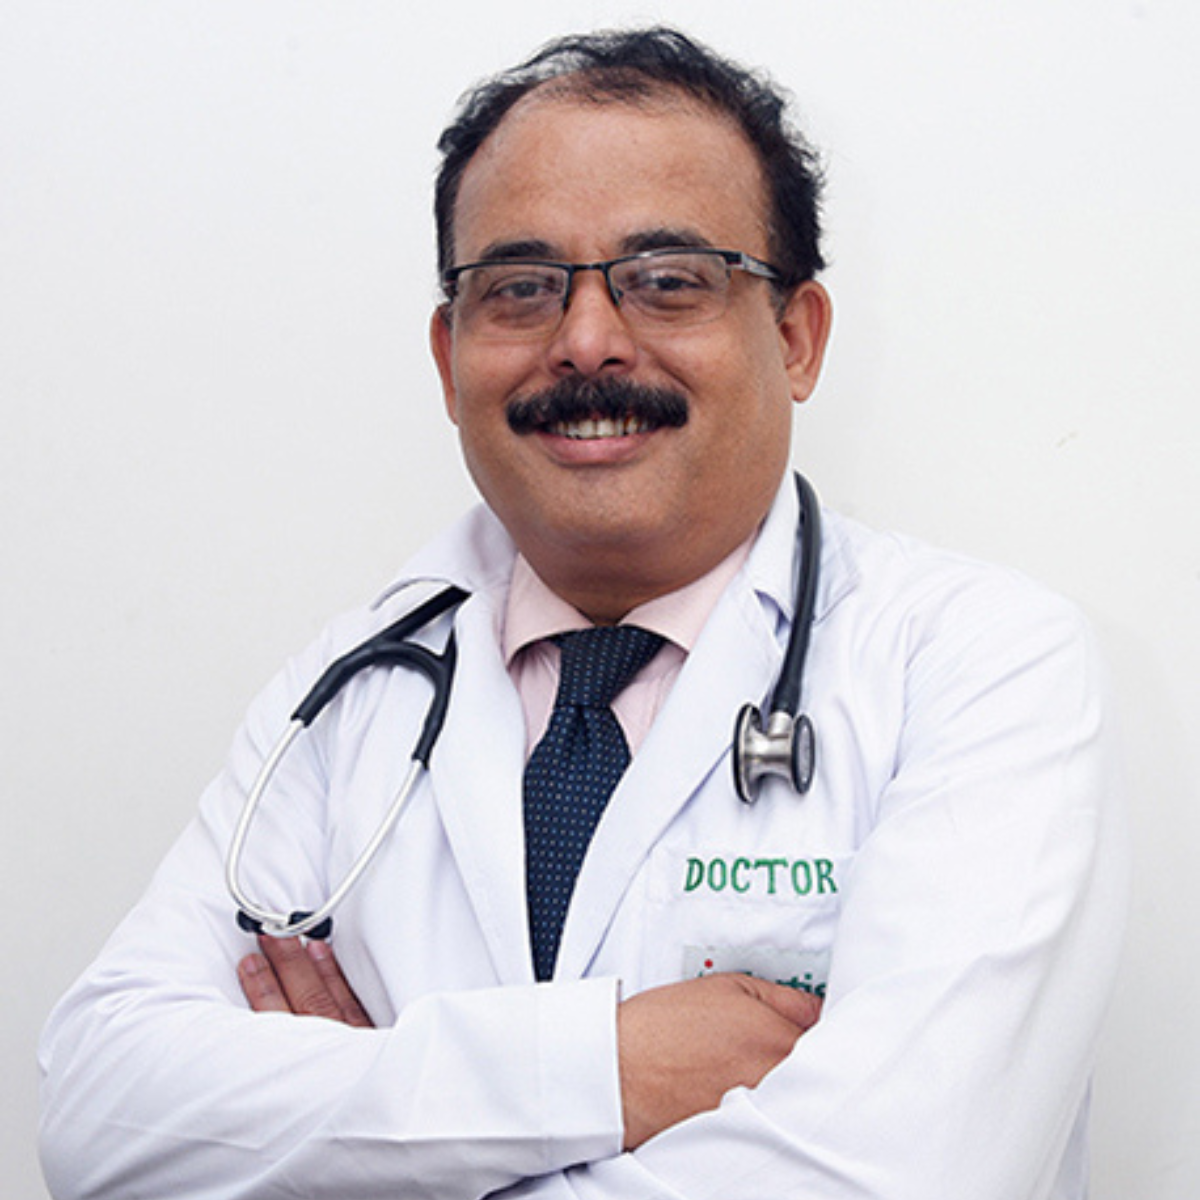 Dr. Basabbijay Sarkar